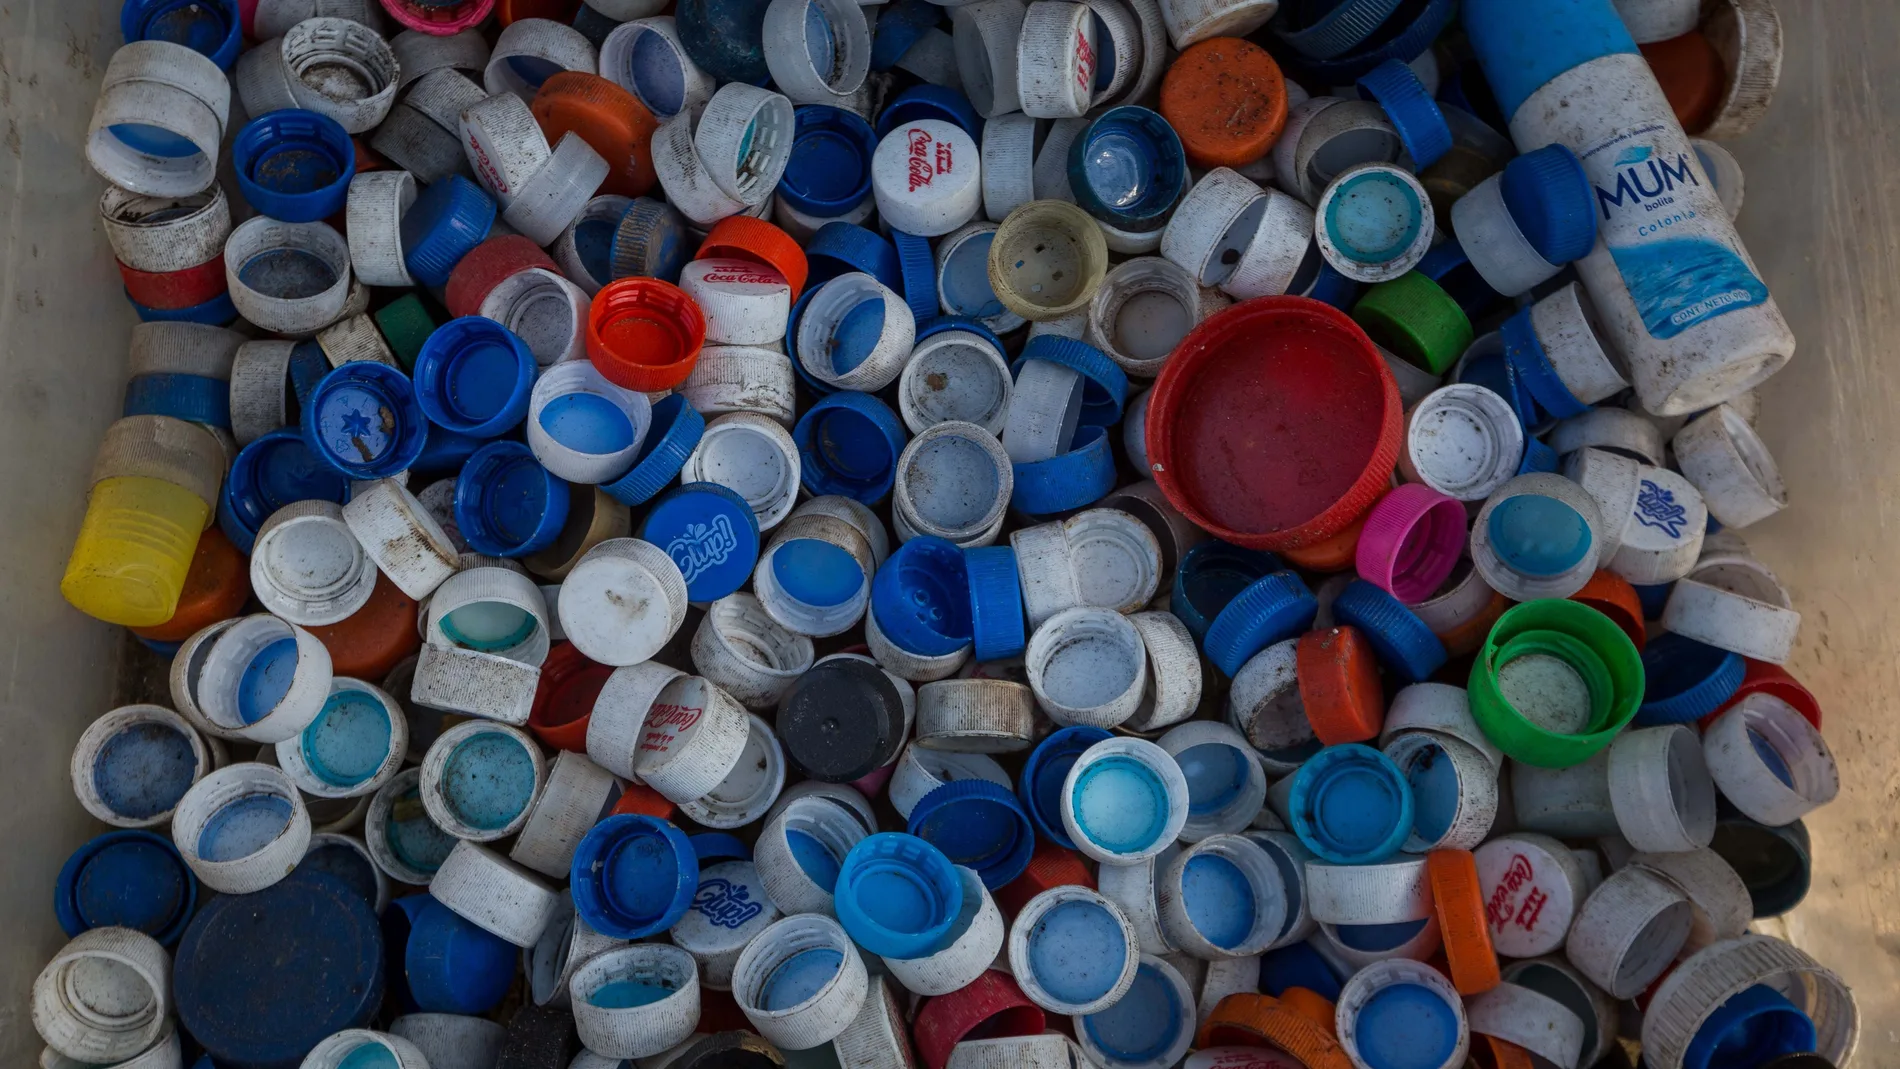 La cantidad de plástico reciclado aumenta cada año, habiéndose superado el millón de toneladas desde 2017